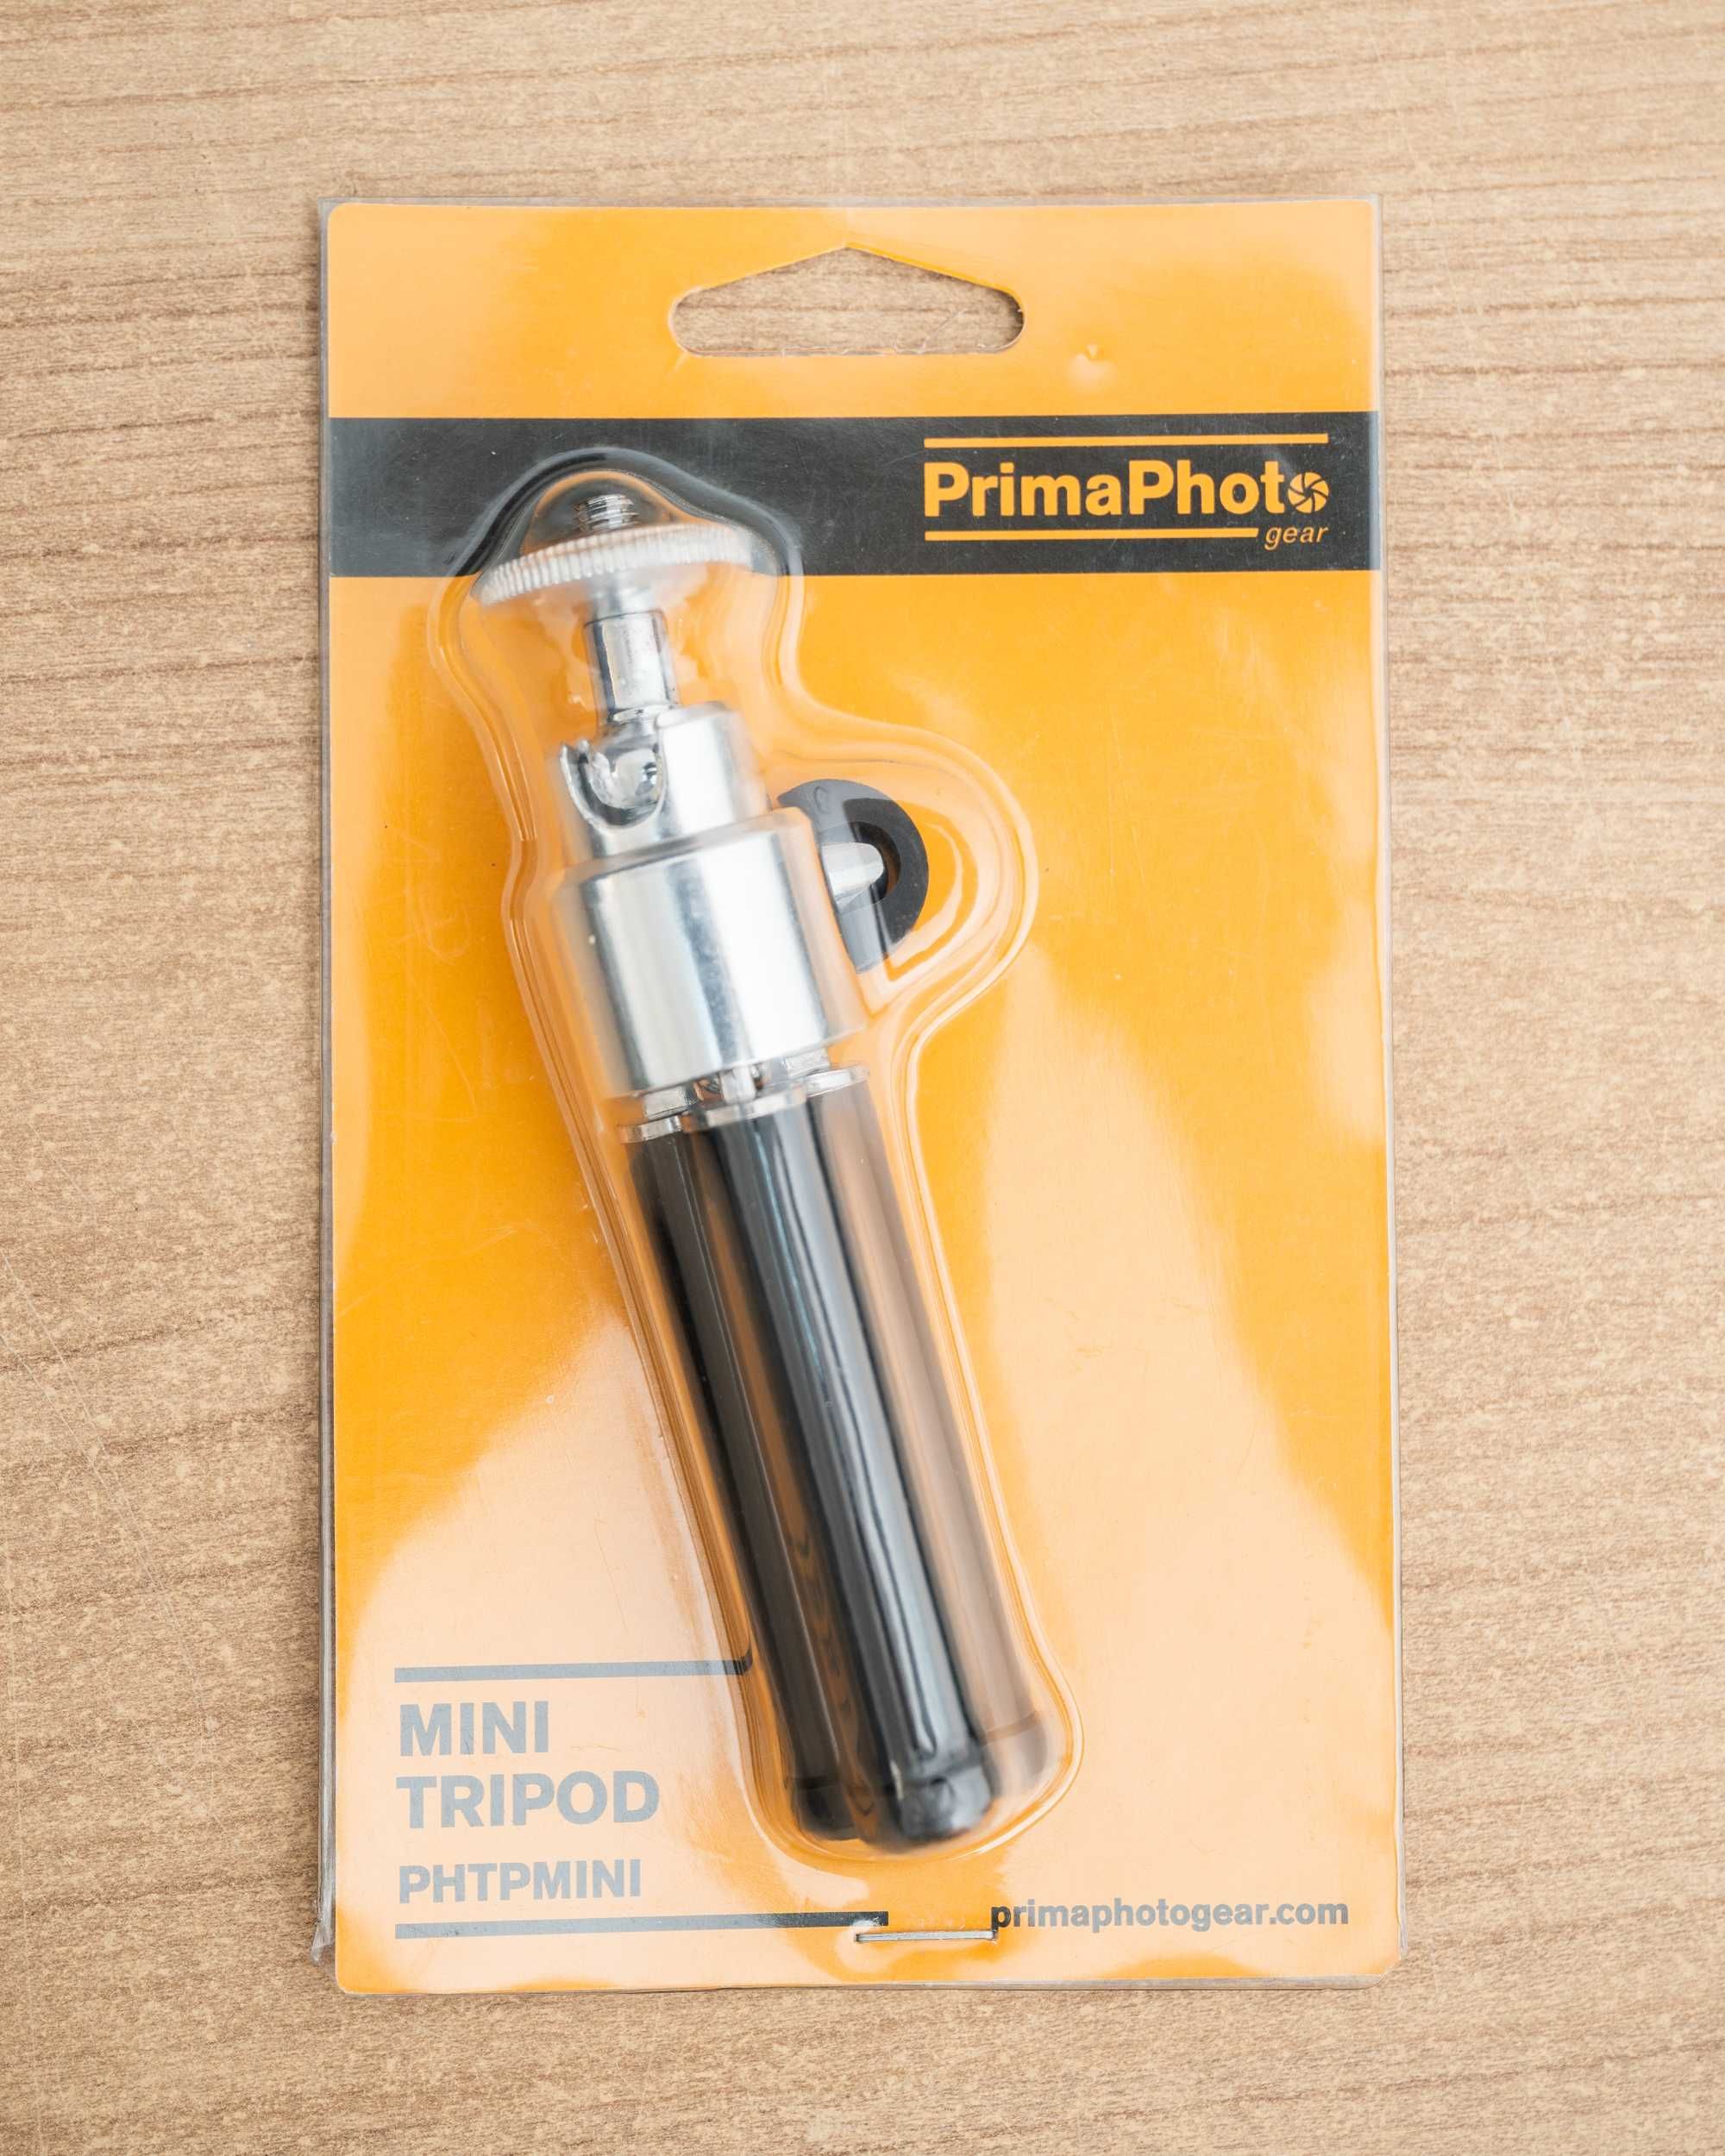 Prima Photo Gear Mini Tripod Black PHTPMINI